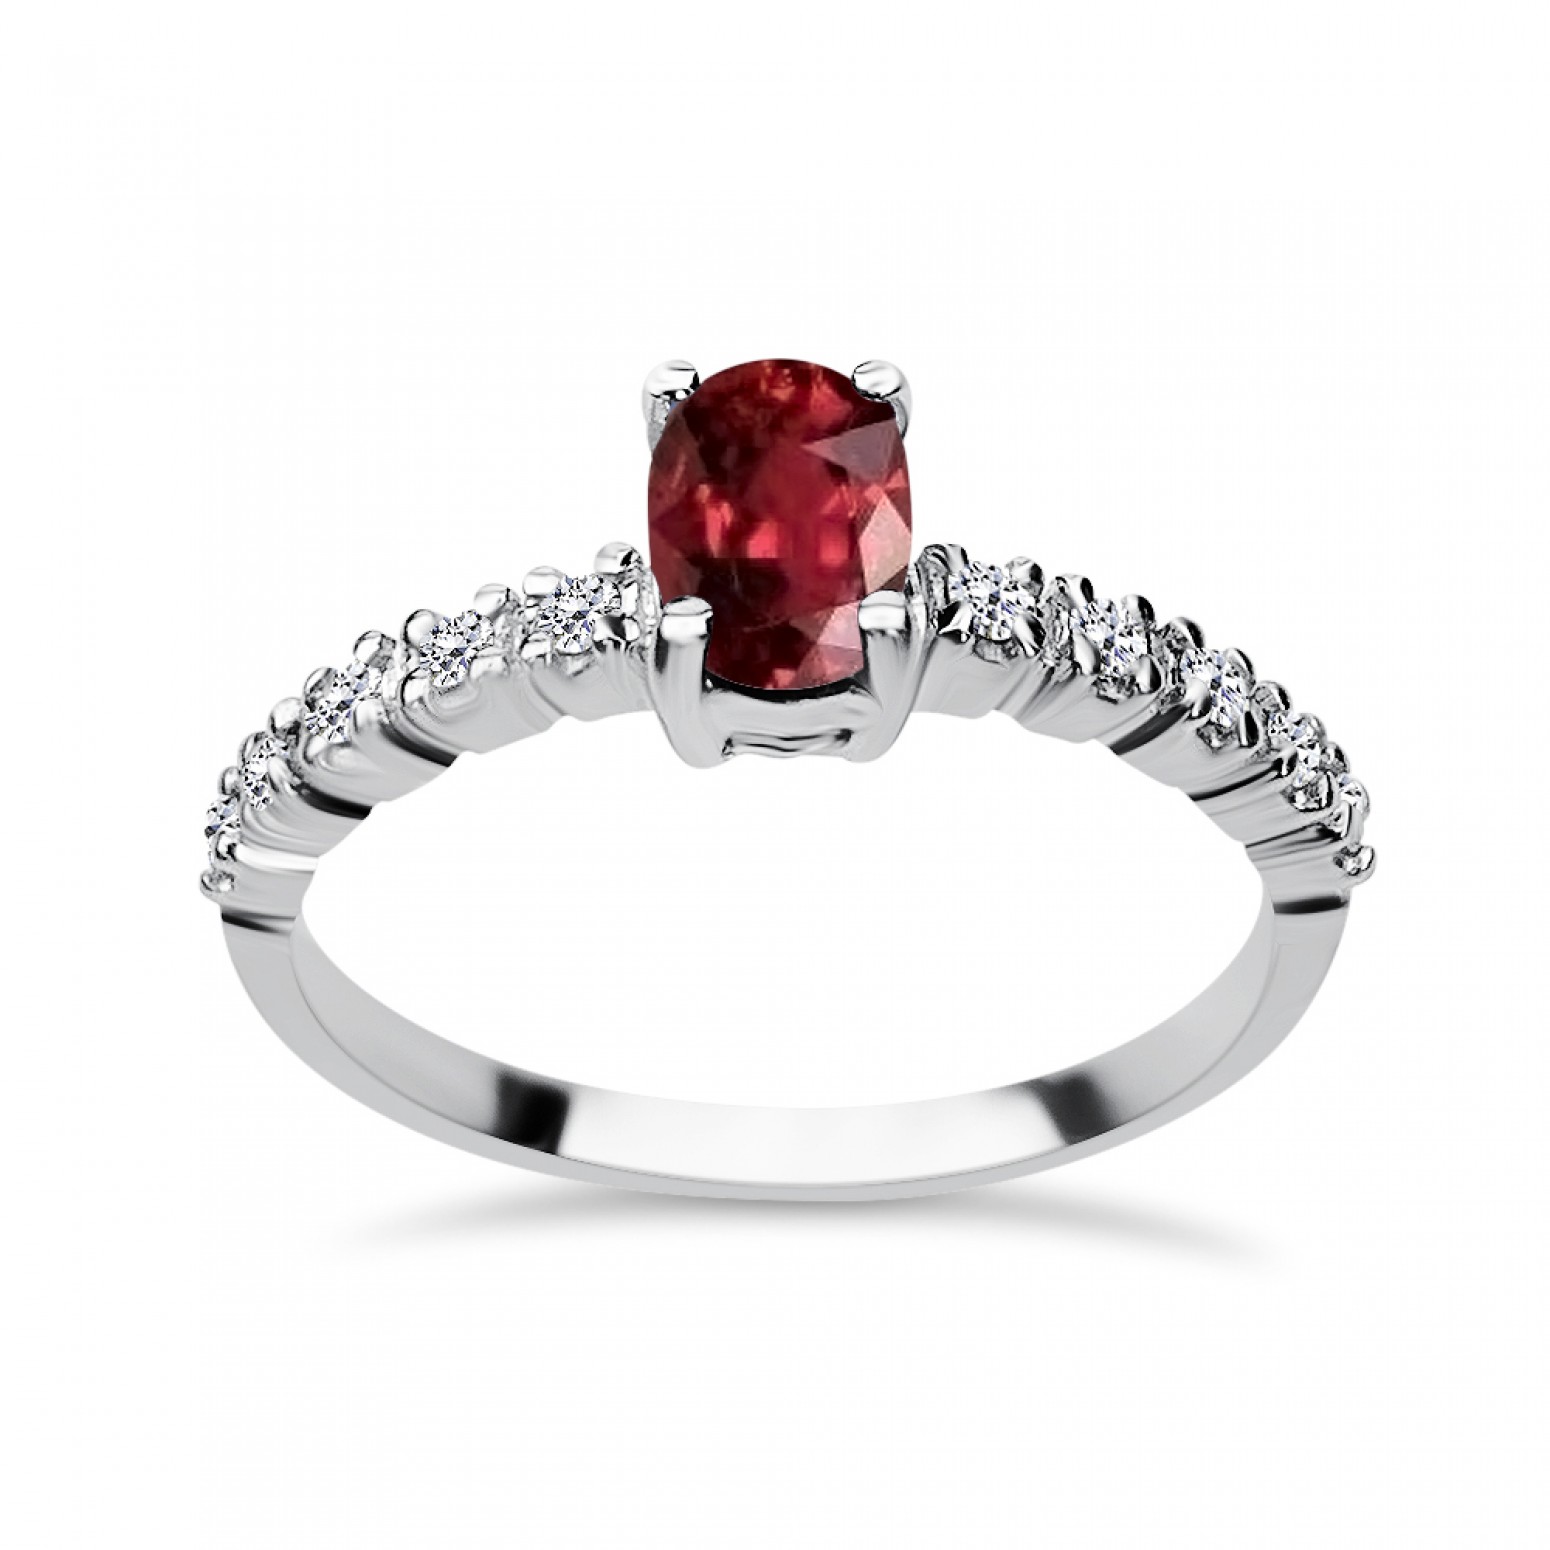 Μονόπετρο δαχτυλίδι Κ18 λευκόχρυσο με ρουμπίνι 0.77ct και διαμάντια, VS1, G da3493 ΔΑΧΤΥΛΙΔΙΑ ΑΡΡΑΒΩΝΑ Κοσμηματα - chrilia.gr